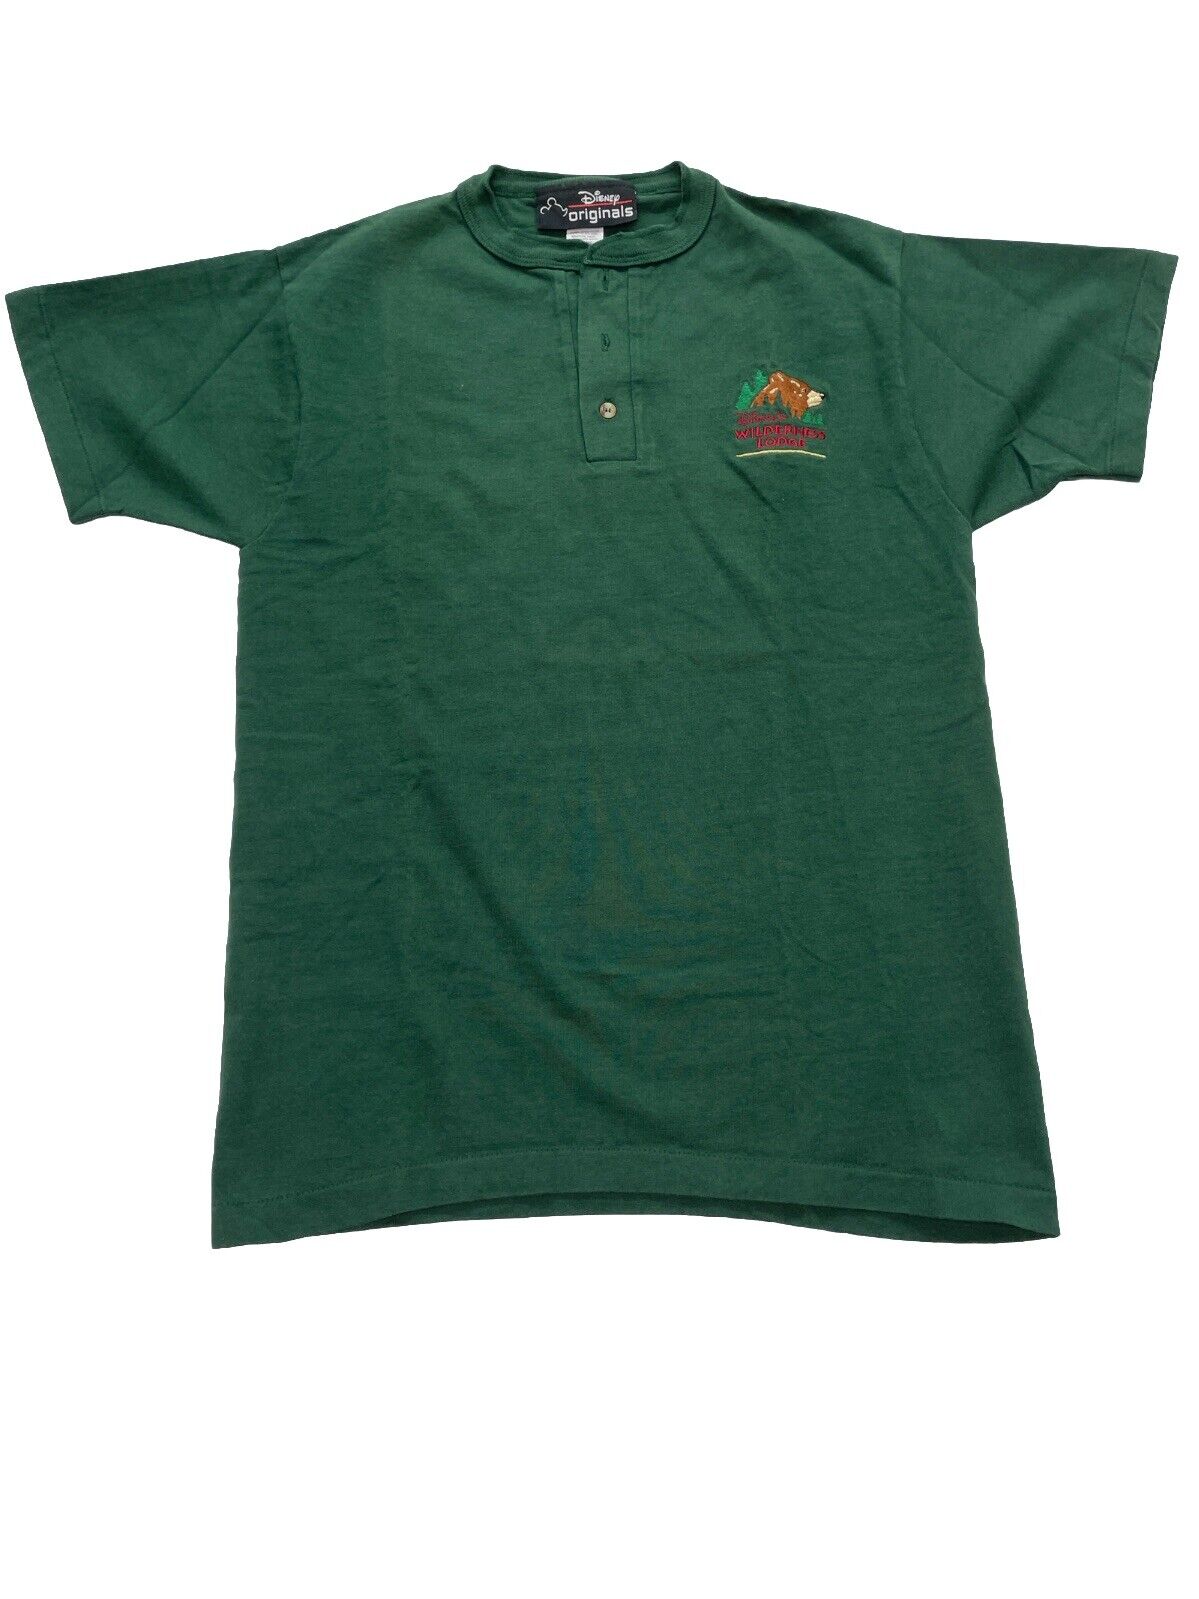 VINTAGE Disney Originals  T shirt Unisex Green Wilderness Lodge S/M